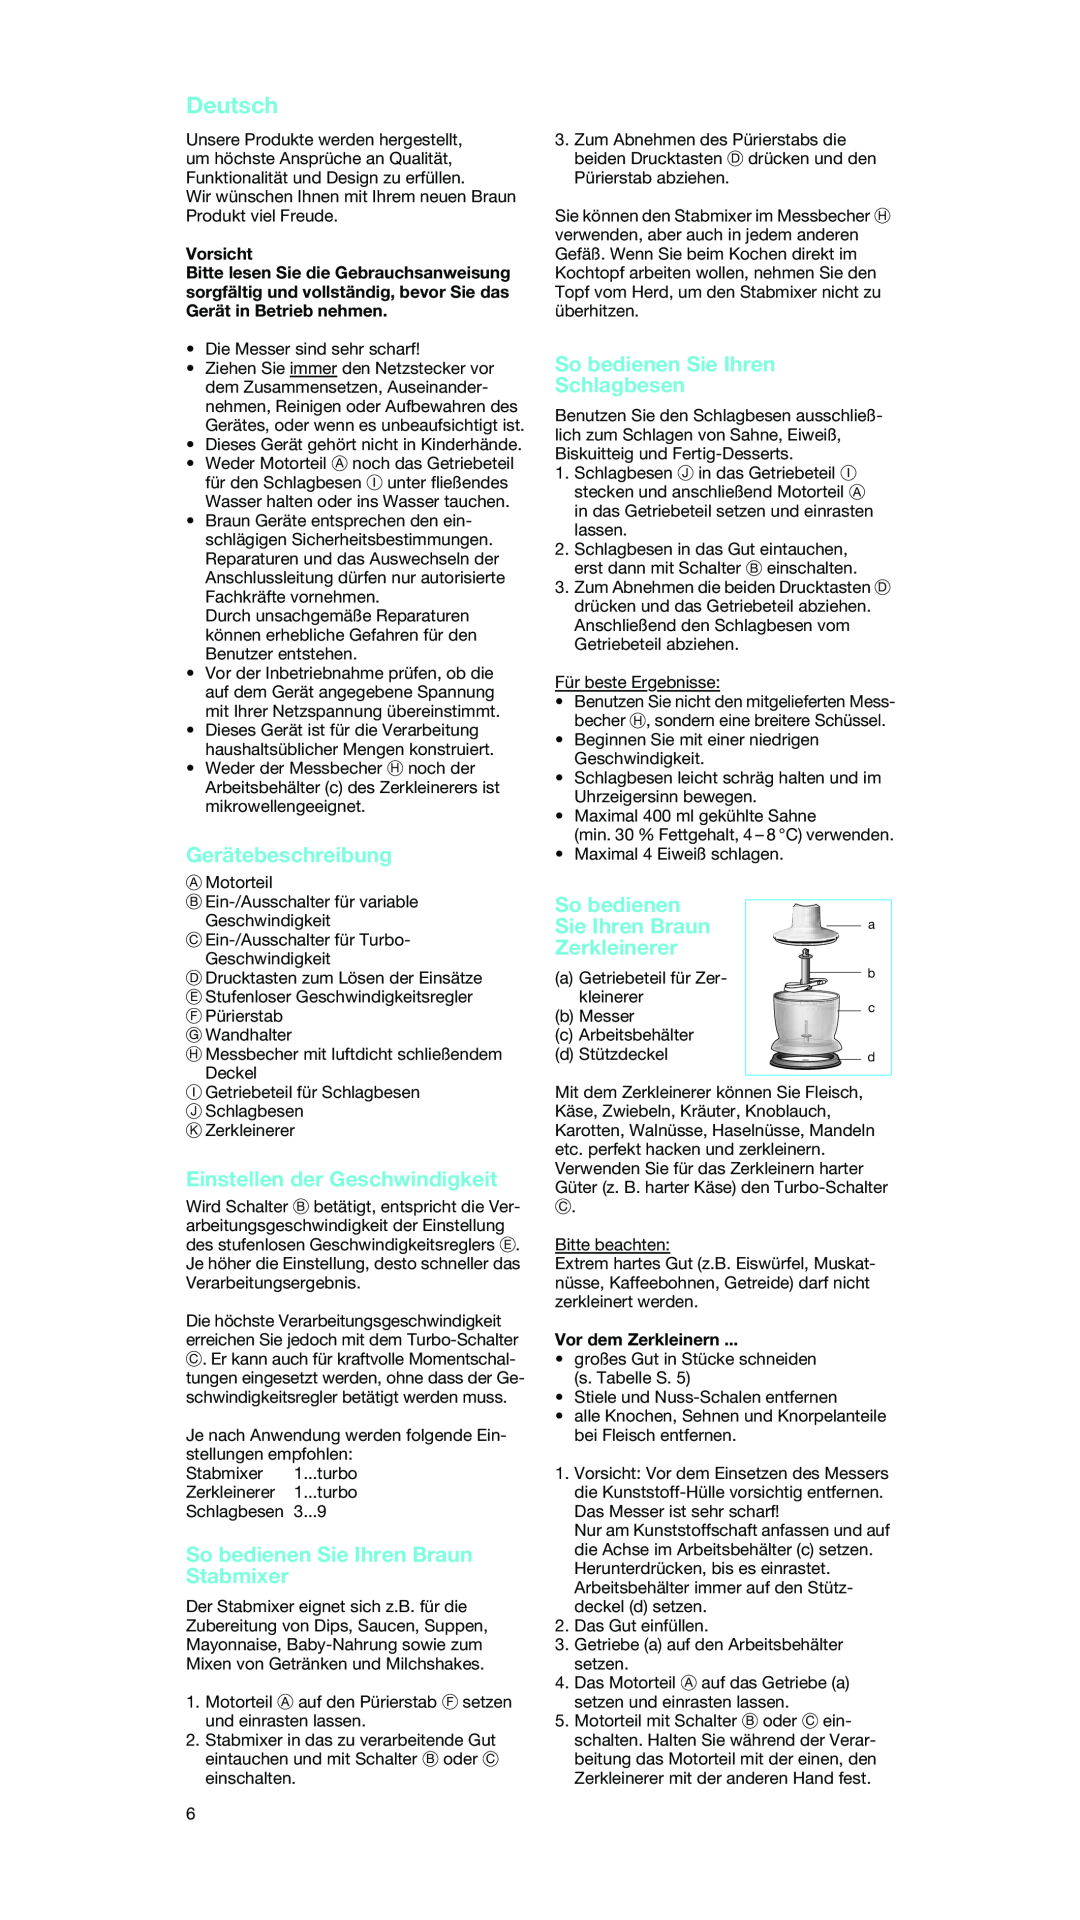 Braun MR 5550 MCA manual Deutsch, Gerätebeschreibung, Einstellen der Geschwindigkeit, So bedienen Sie Ihren Braun Stabmixer 